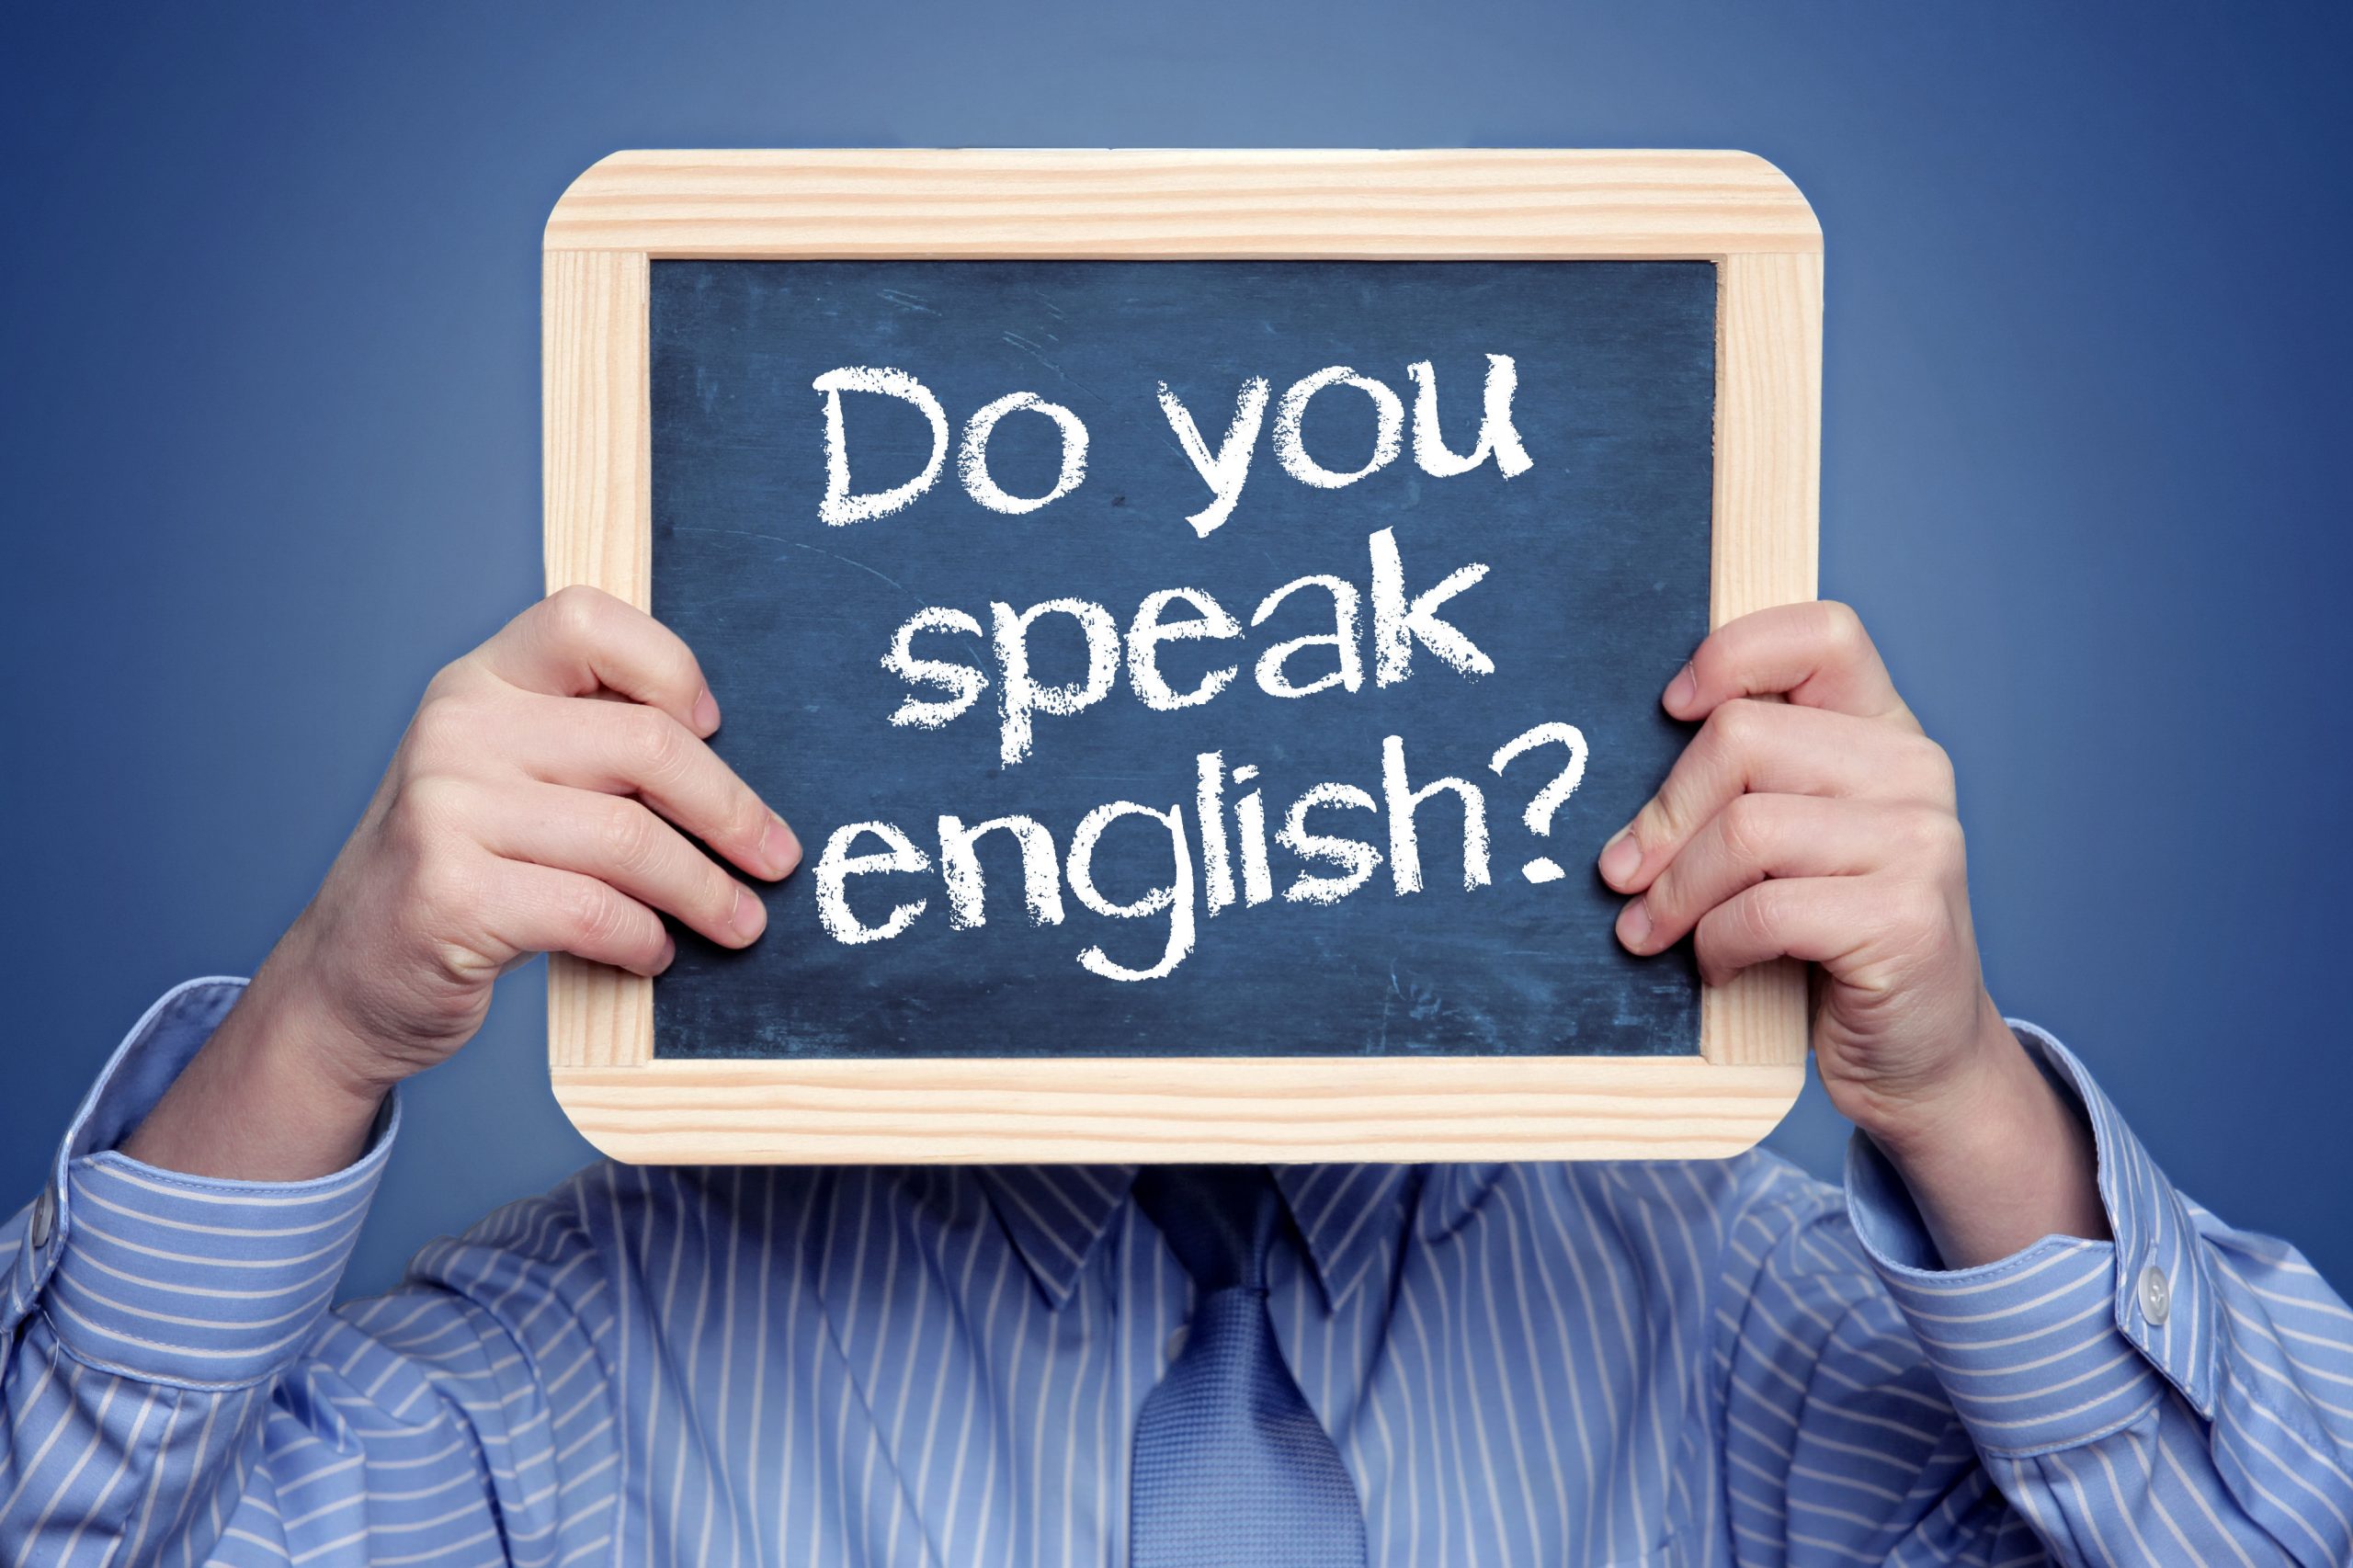 Do you don t speak english. Английский язык. Изучение английского языка. Учим английский. Изучение английского языка картинки.